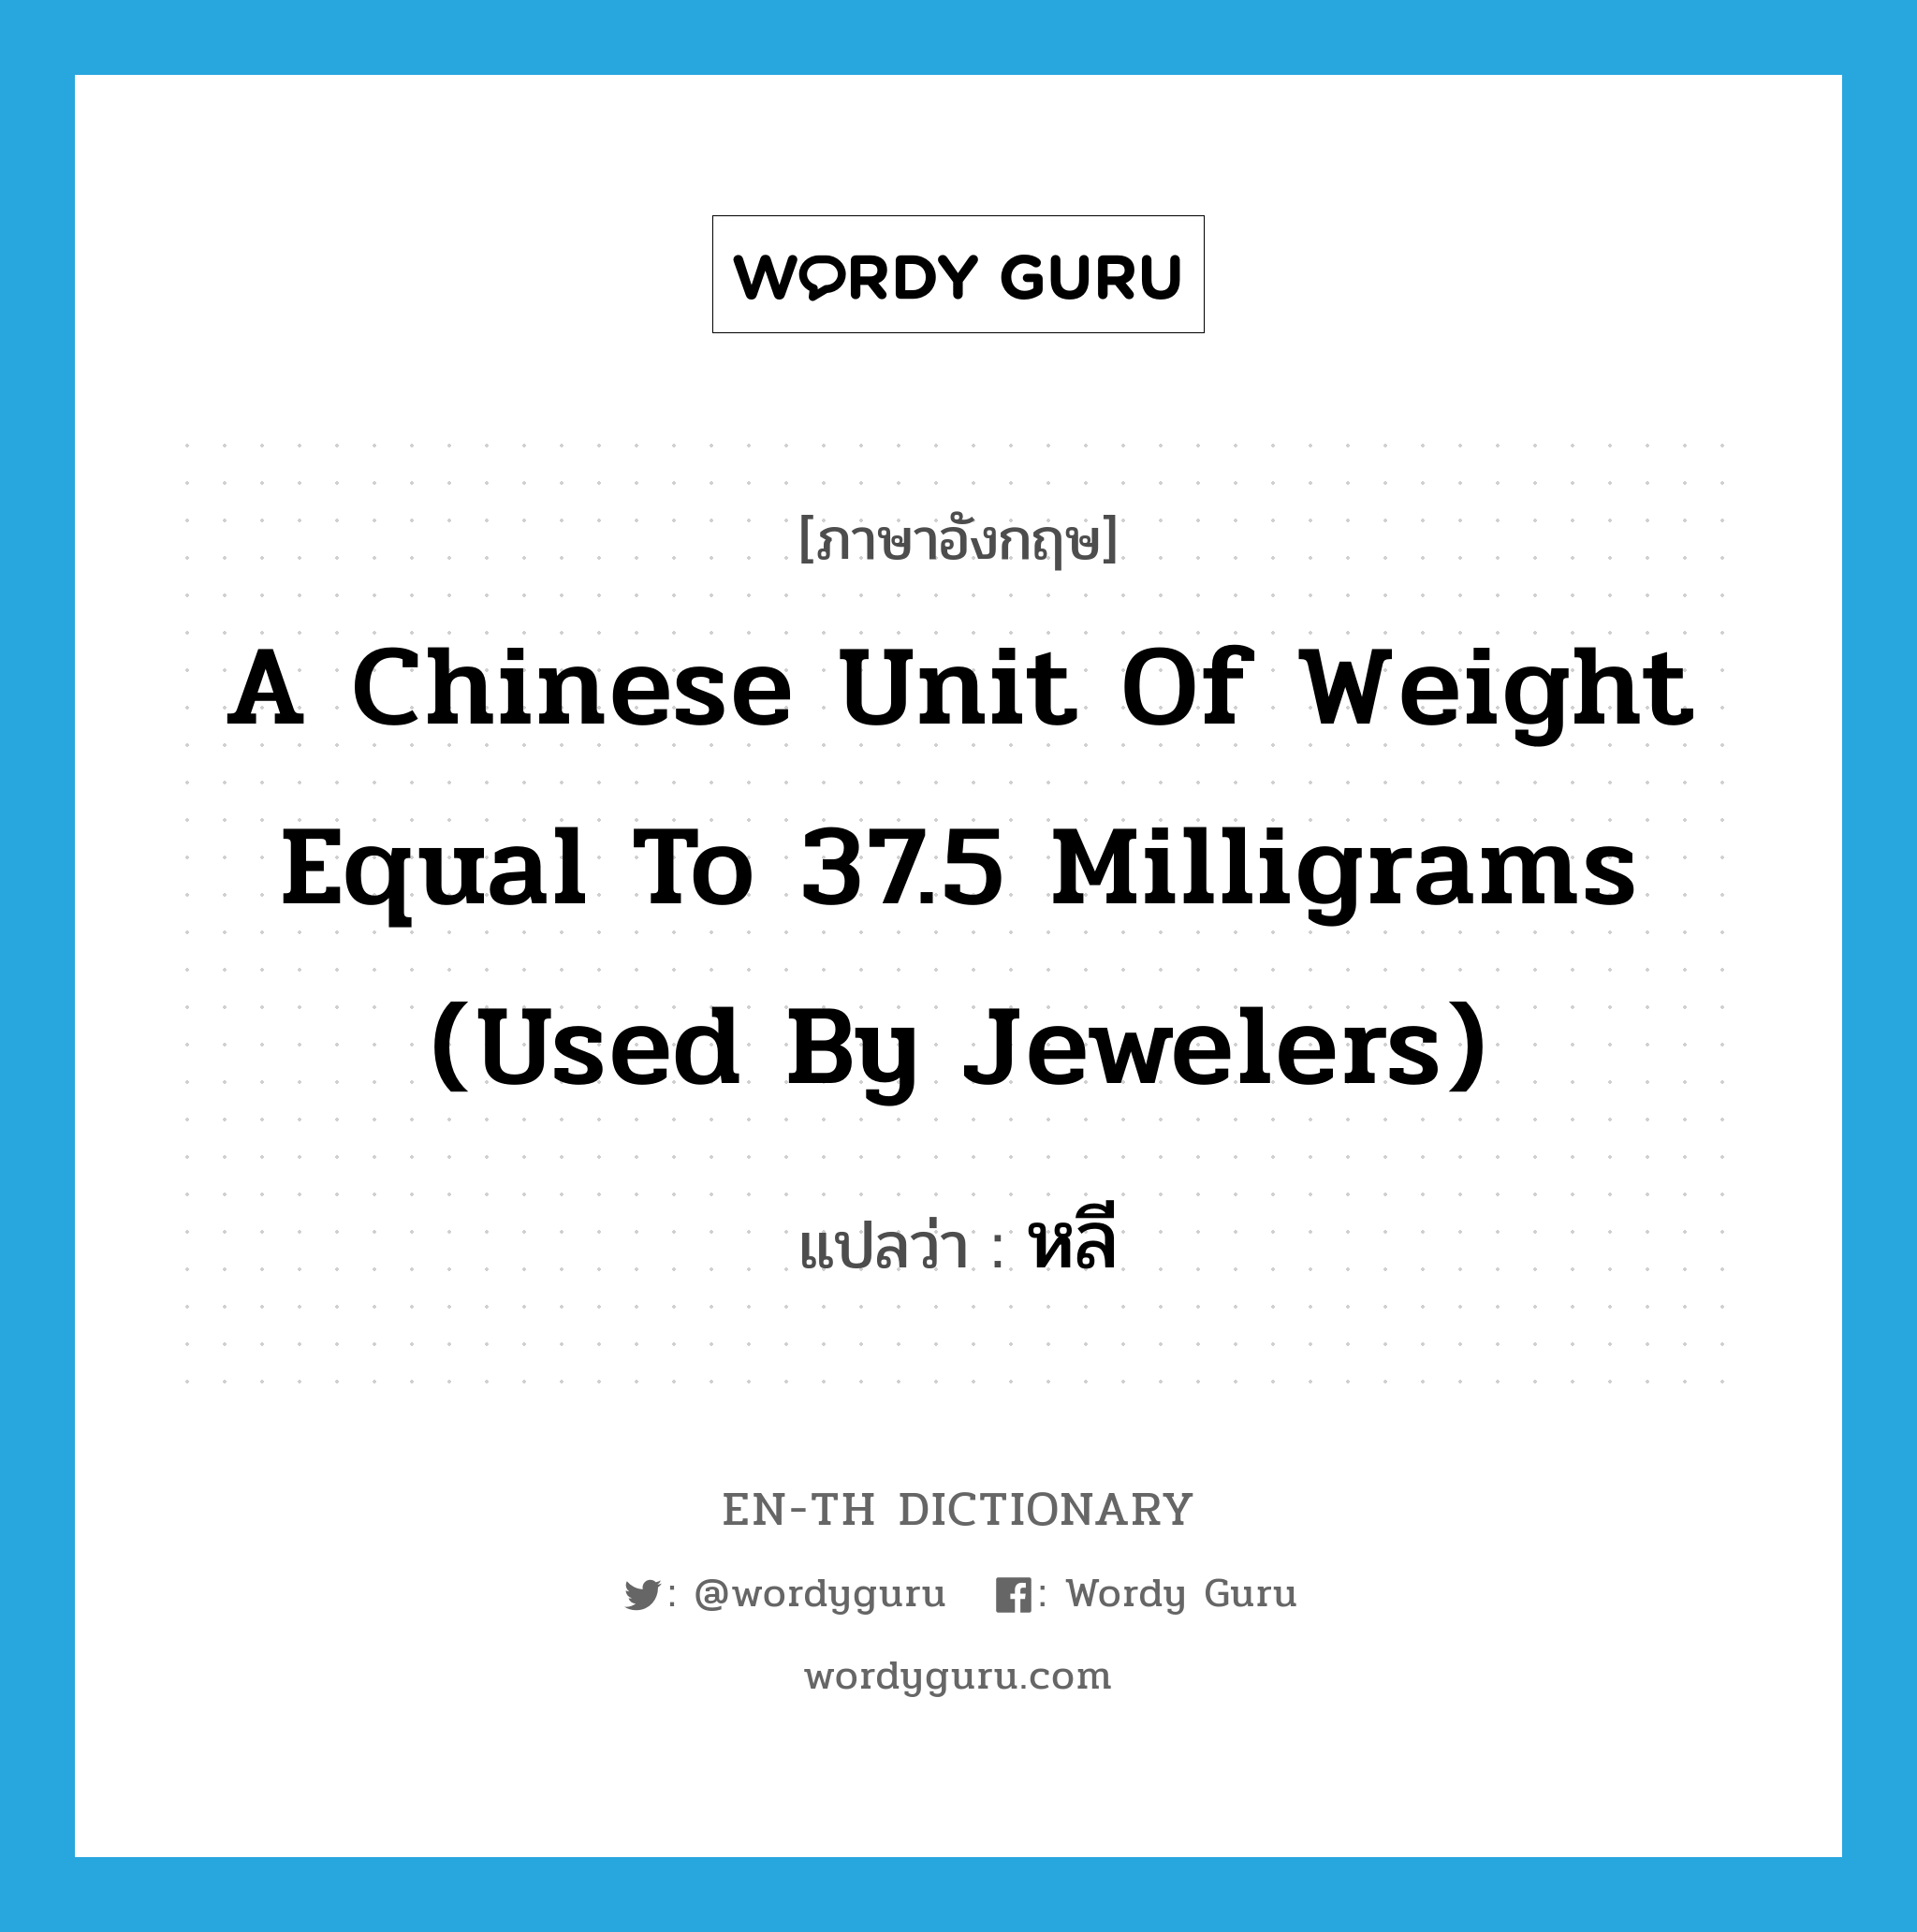 หลี ภาษาอังกฤษ?, คำศัพท์ภาษาอังกฤษ หลี แปลว่า a Chinese unit of weight equal to 37.5 milligrams (used by jewelers) ประเภท N หมวด N